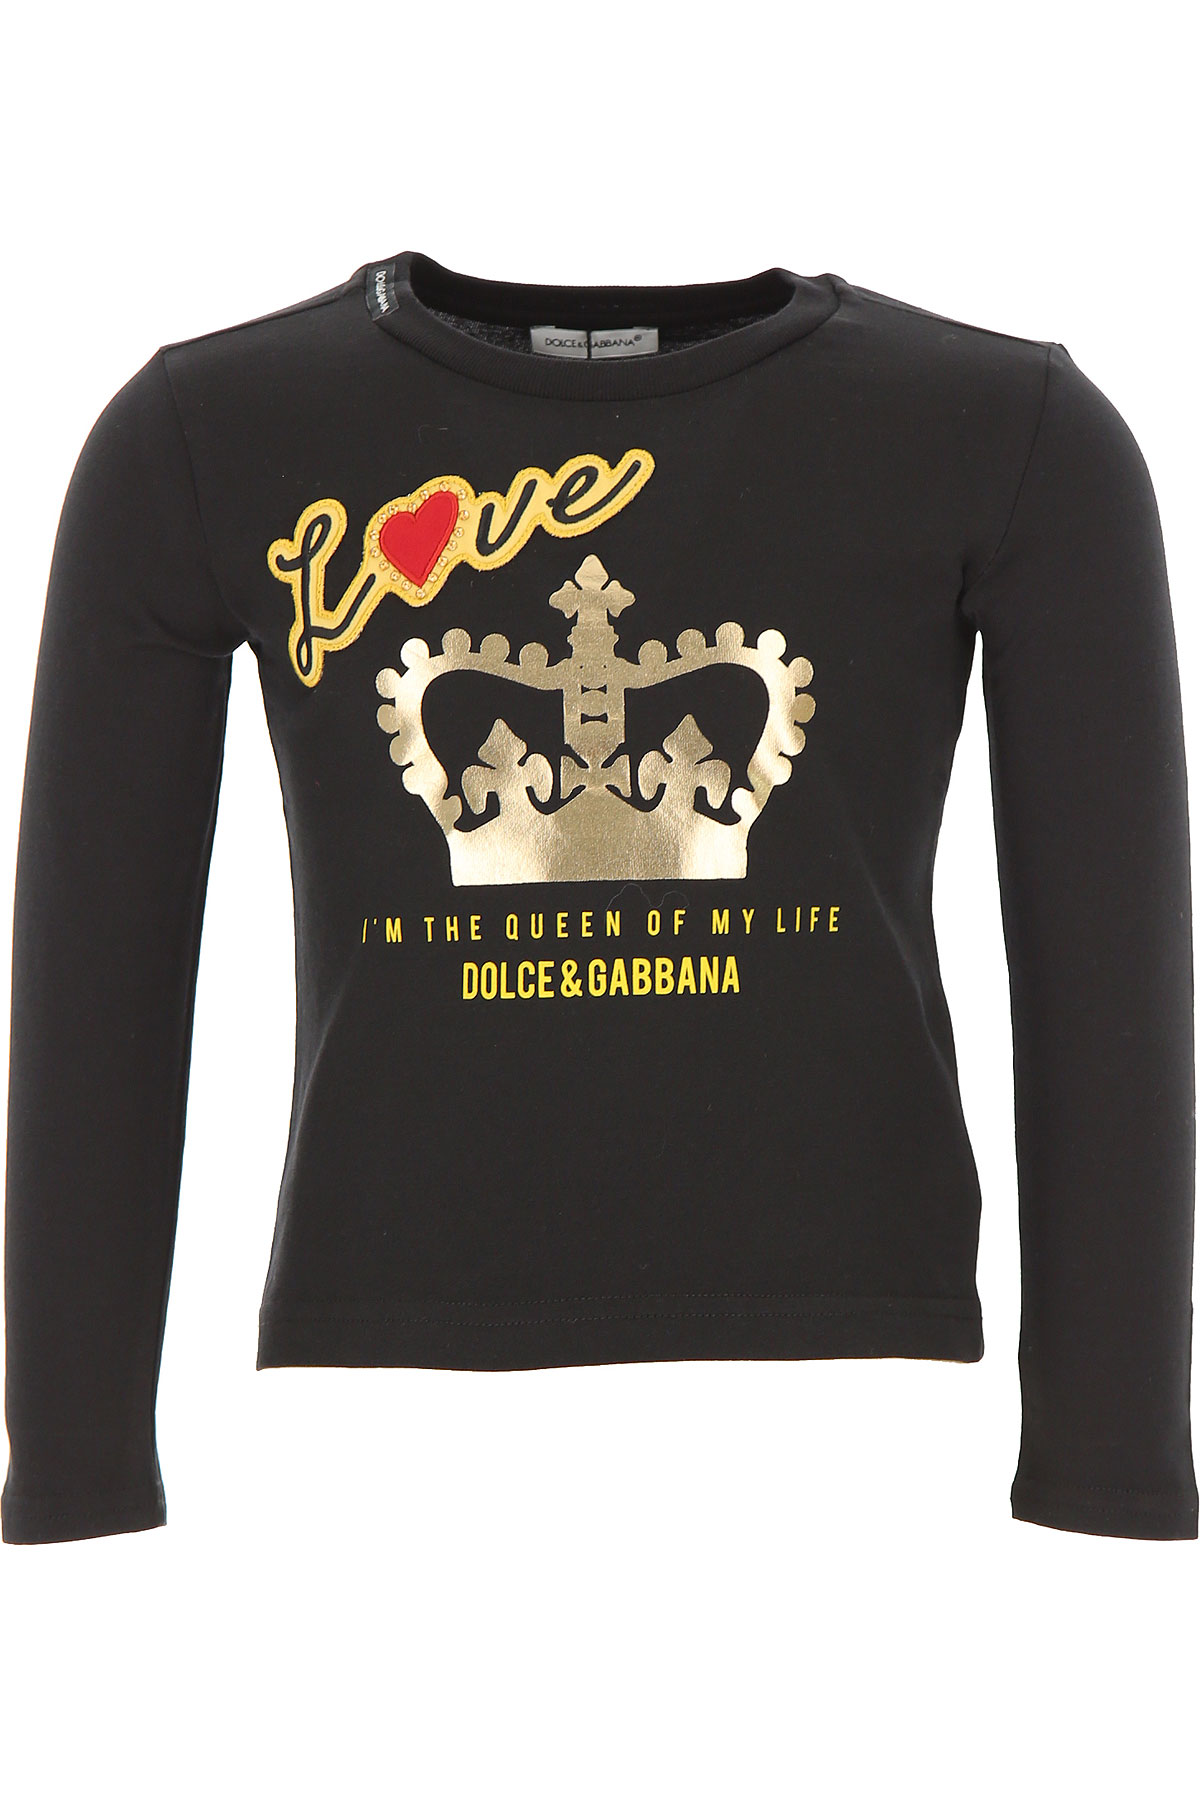 Dolce & Gabbana Kinder T-Shirt für Mädchen Günstig im Sale, Schwarz, Baumwolle, 2017, 10Y 12Y 2Y 3Y 4Y 6Y 8Y